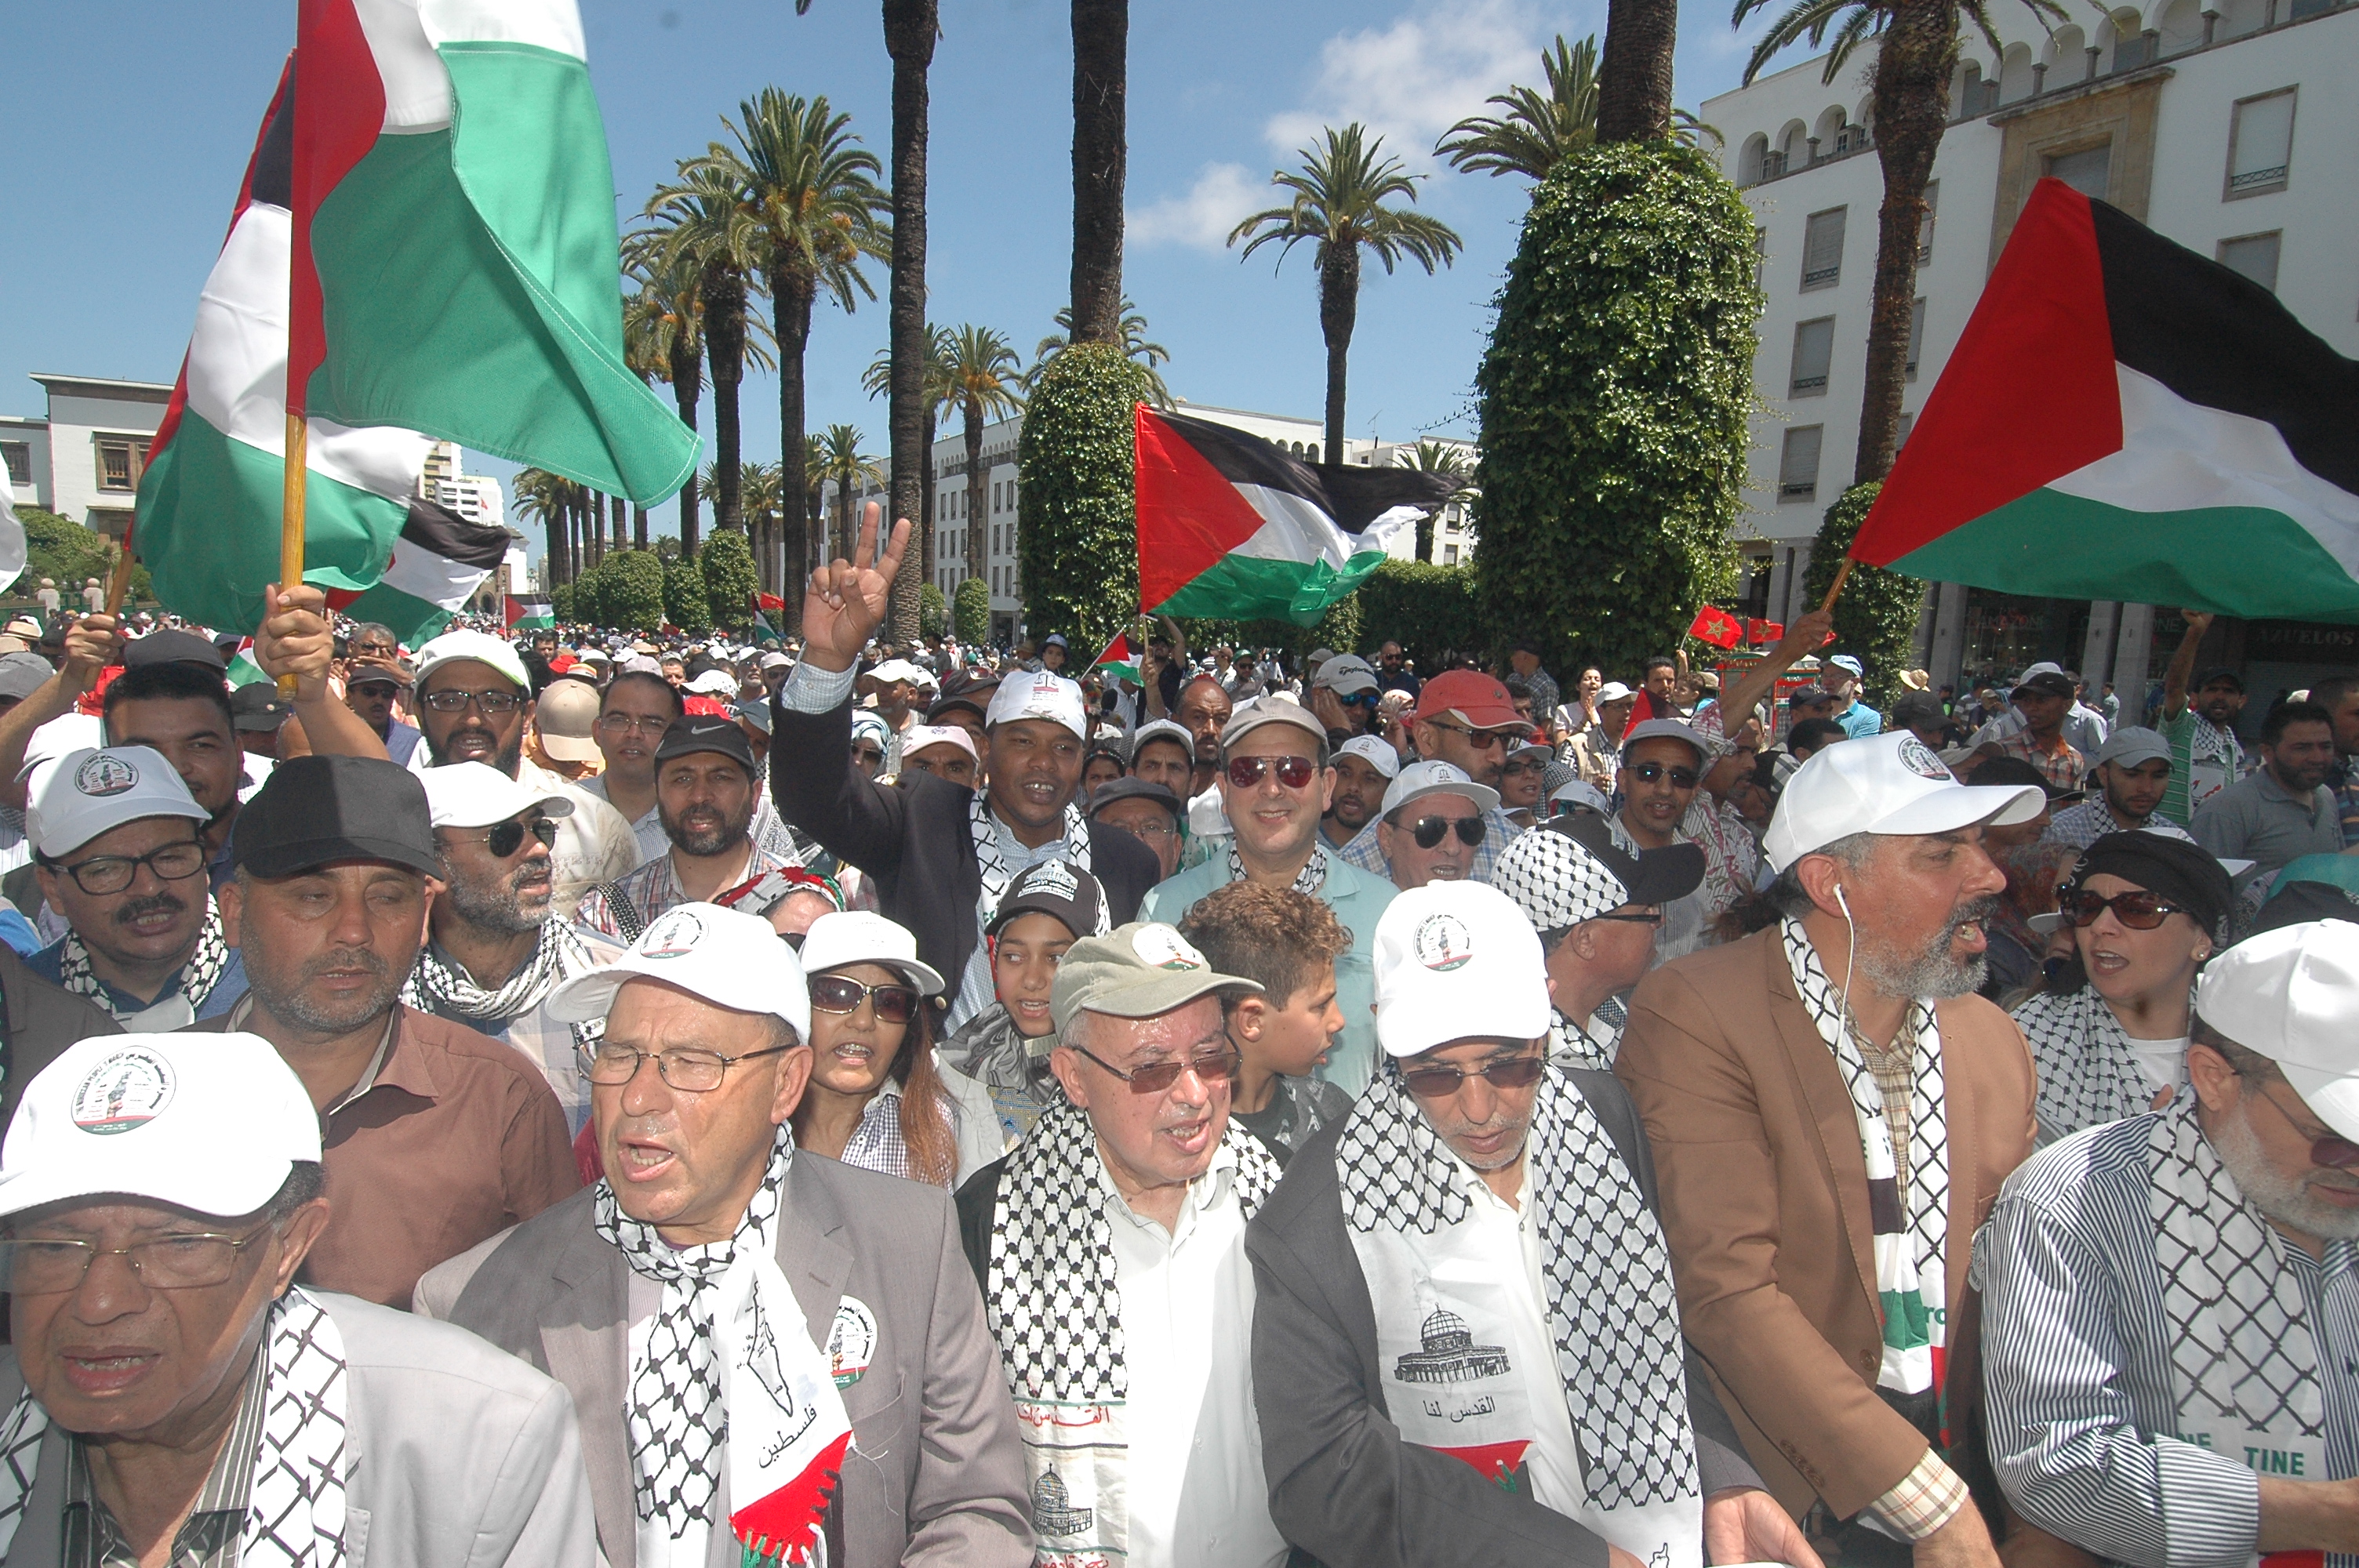 الأخ نزار بركة : مسيرة الرباط تعبير عن الإجماع الوطني نصرة لفلسطين ورفضا لما سمي بـ"صفقة القرن"